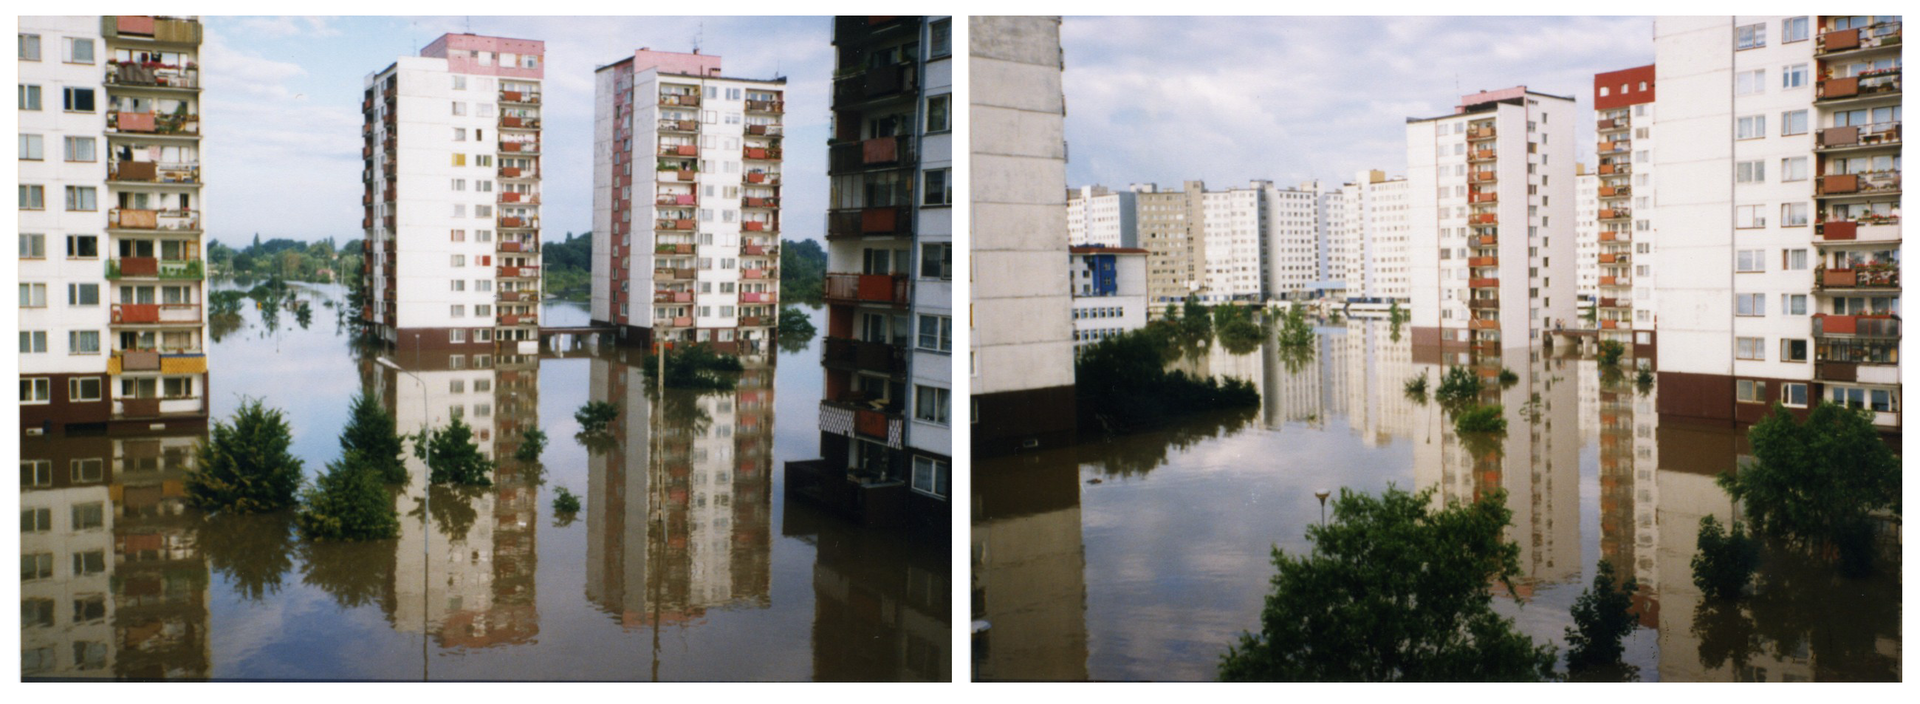 Ilustracja zawiera dwa zdjęcia przedstawiające miasto podczas powodzi na przykładzie Wrocławia latem tysiąc dziewięćset dziewięćdziesiątego siódmego roku. Osiedle gęsto zabudowanych bloków z wielkiej płyty. Woda sięga do balkonów na parterze budynków. Nad powierzchnią wody widoczne zielone korony drzew. 